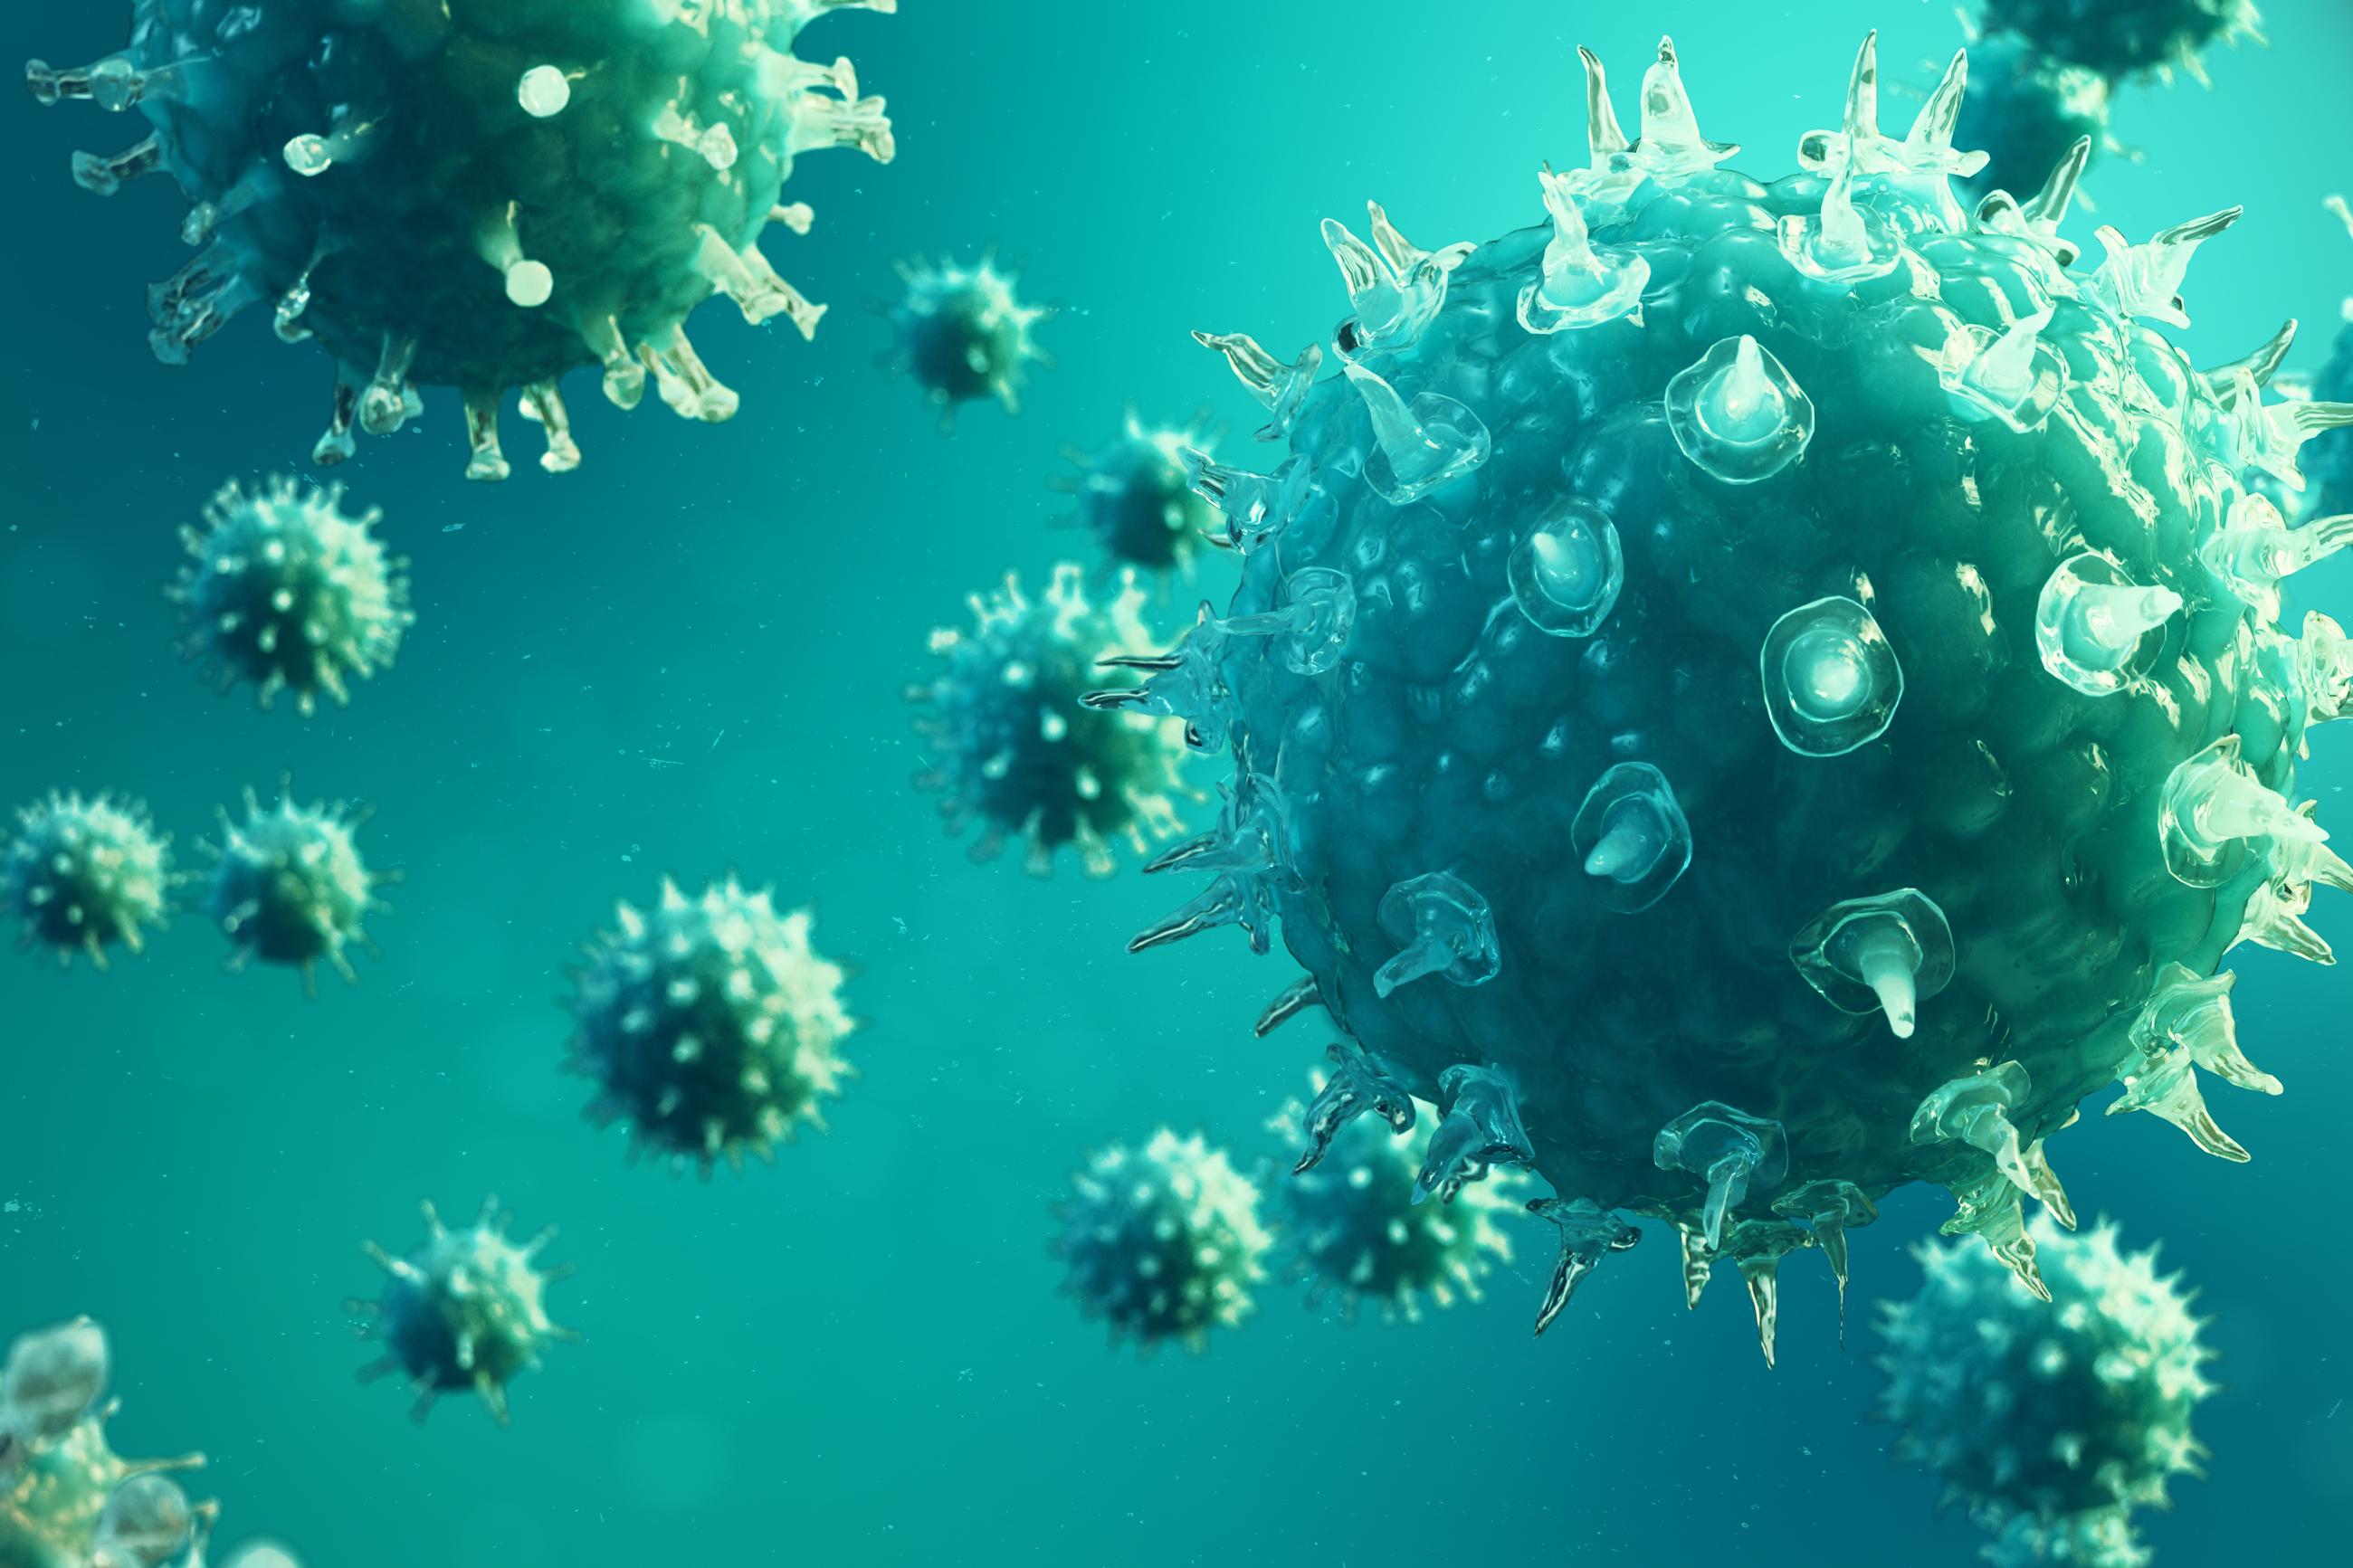 Virusi odgovorni za više od 15 miliona smrtnih slučajeva svake godine - Avaz